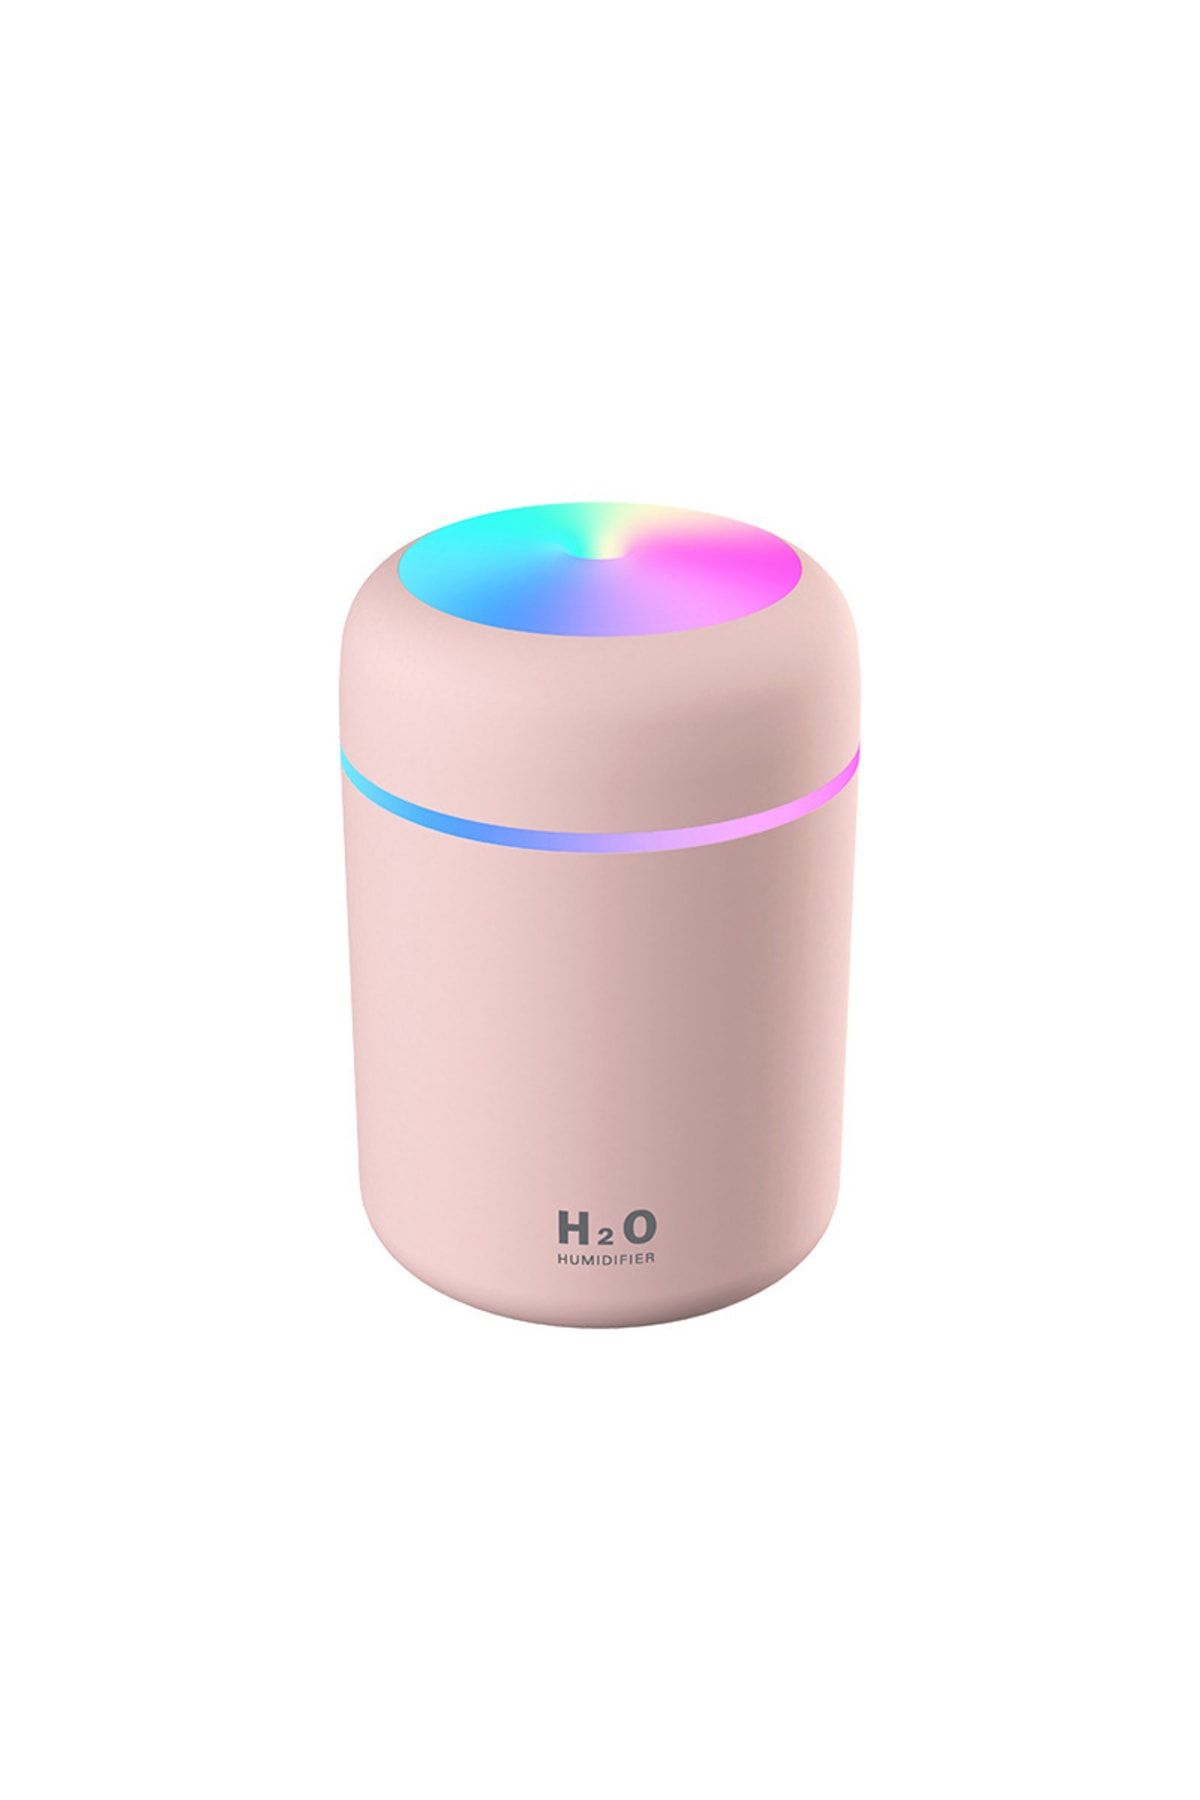 H2O Humidifier Hzl Işıklı Mini Oda Hava Nemlendirici Ve Taşınabilir Buhar Makinesi